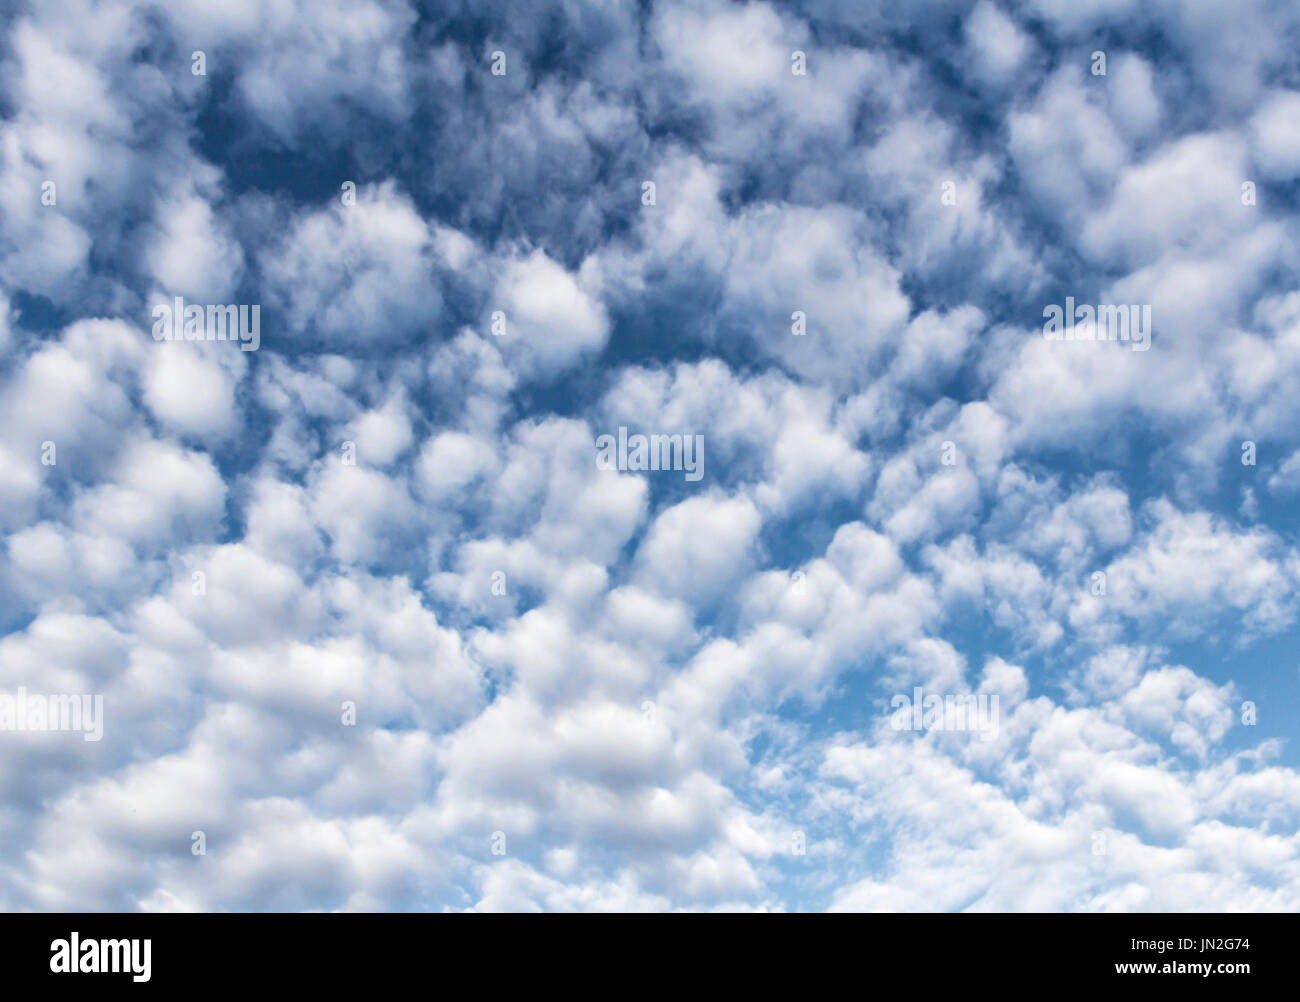 Cloudscape con un sacco di soffici nuvole bianche. Immagine potrebbe essere utile in background per progetti di design o per aggiungere altre immagini e wallpaper Foto Stock